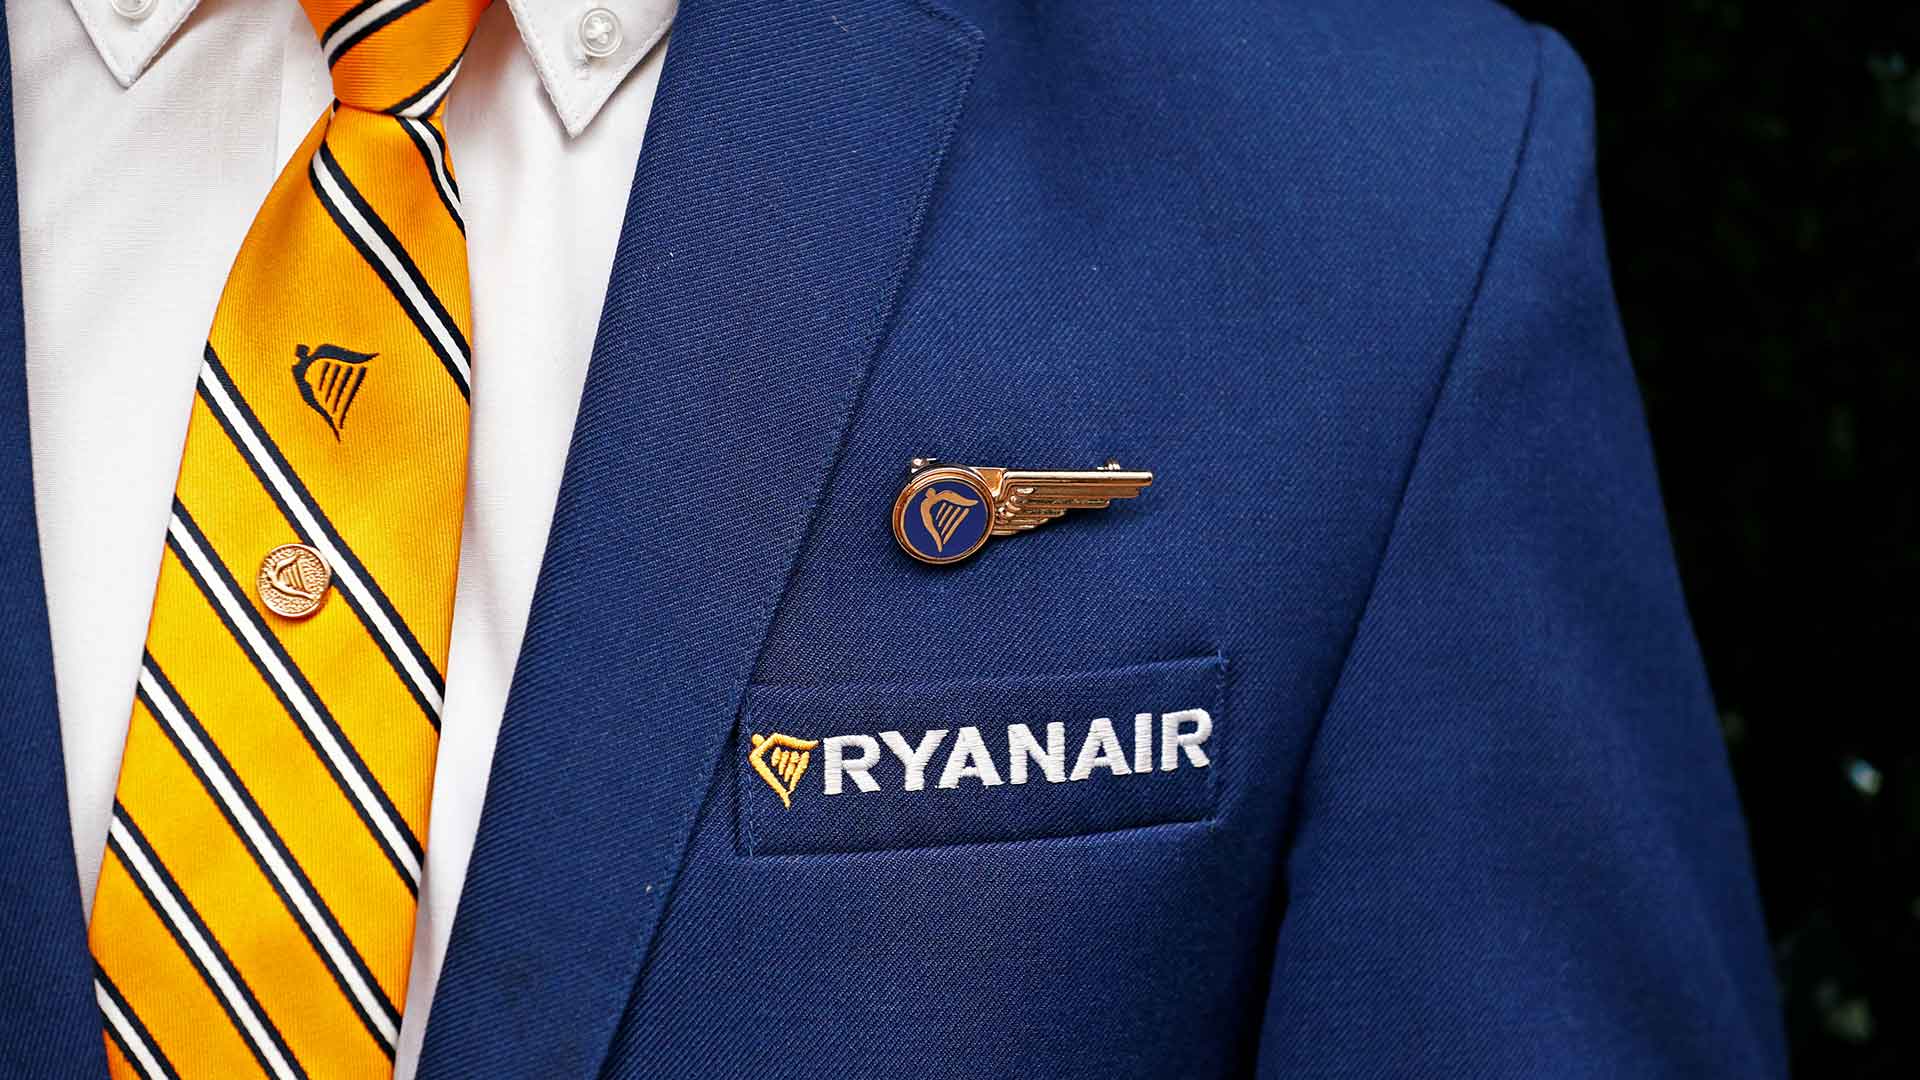 Los tripulantes de cabina de Ryanair harán huelga el 28 de septiembre en España y otros cuatro países